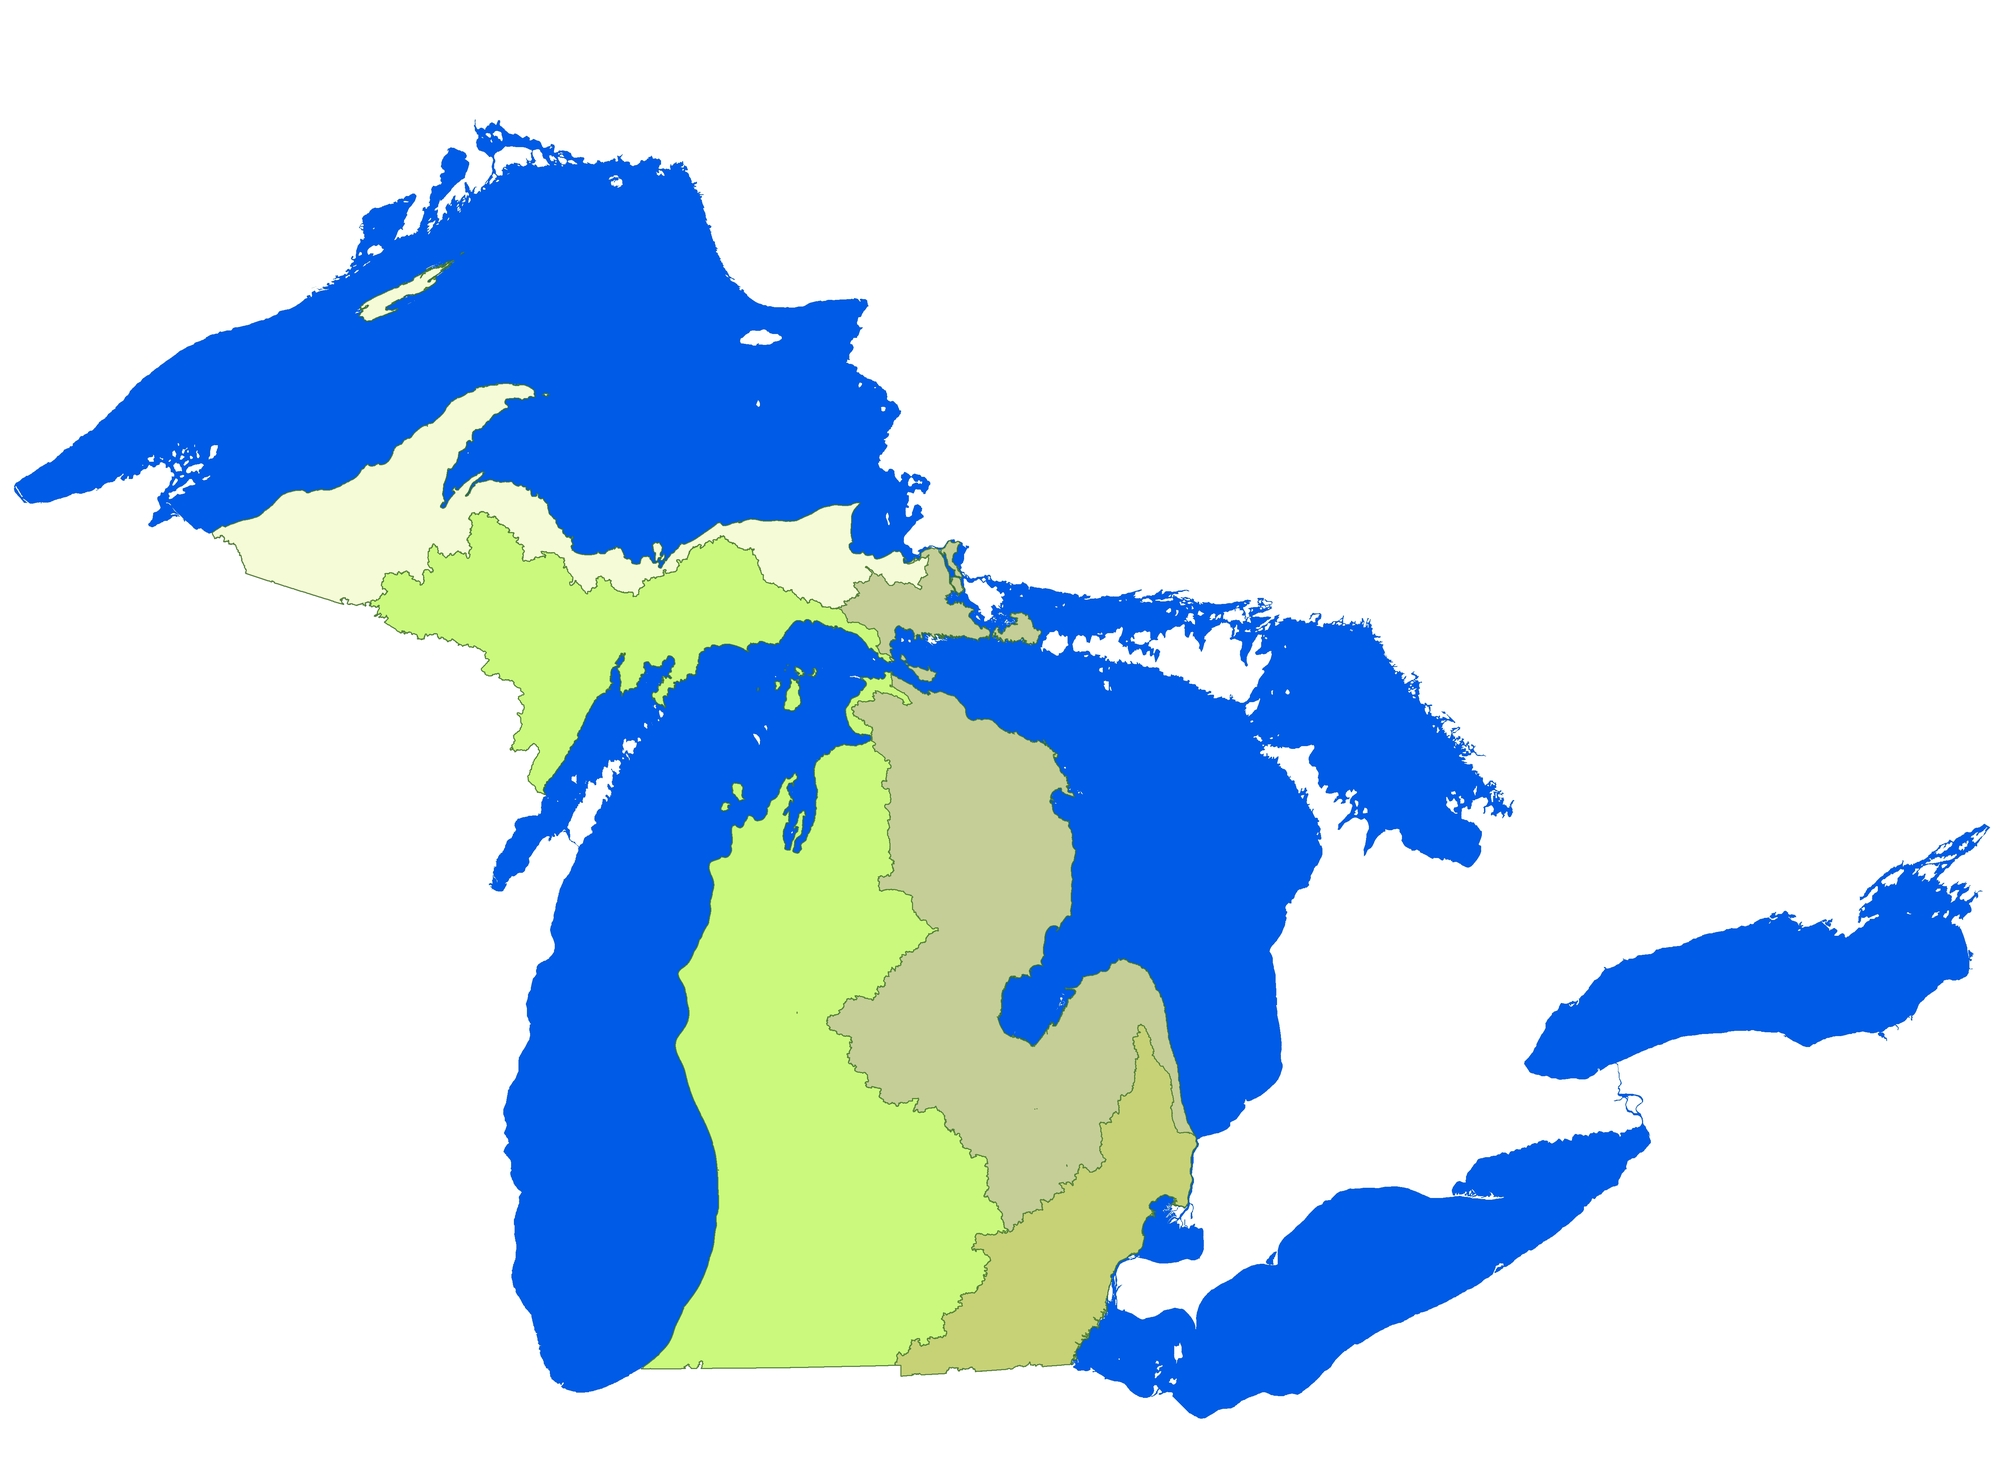 Michigan's Great Lakes Basins